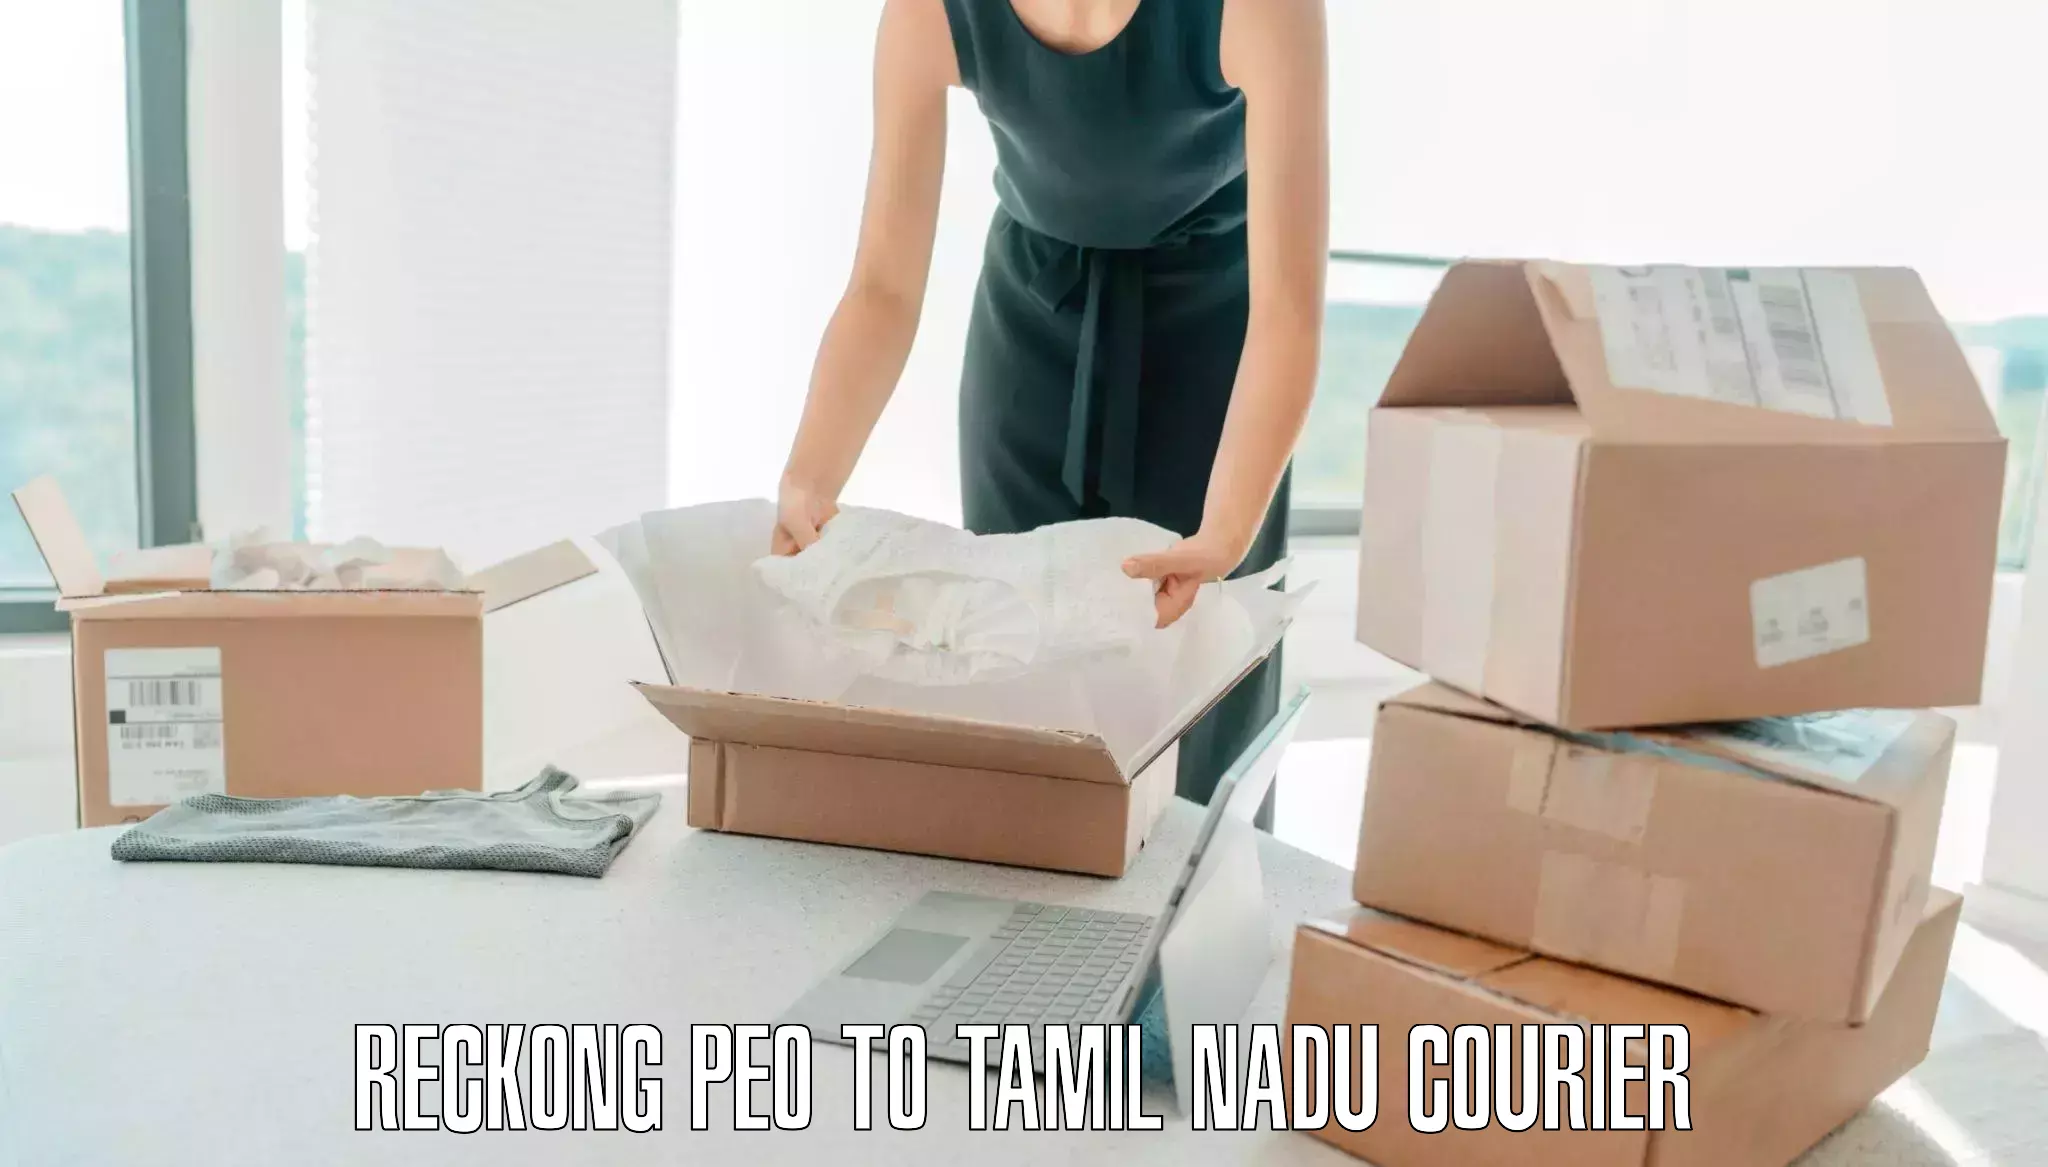 Luggage shipment processing Reckong Peo to Tiruturaipundi